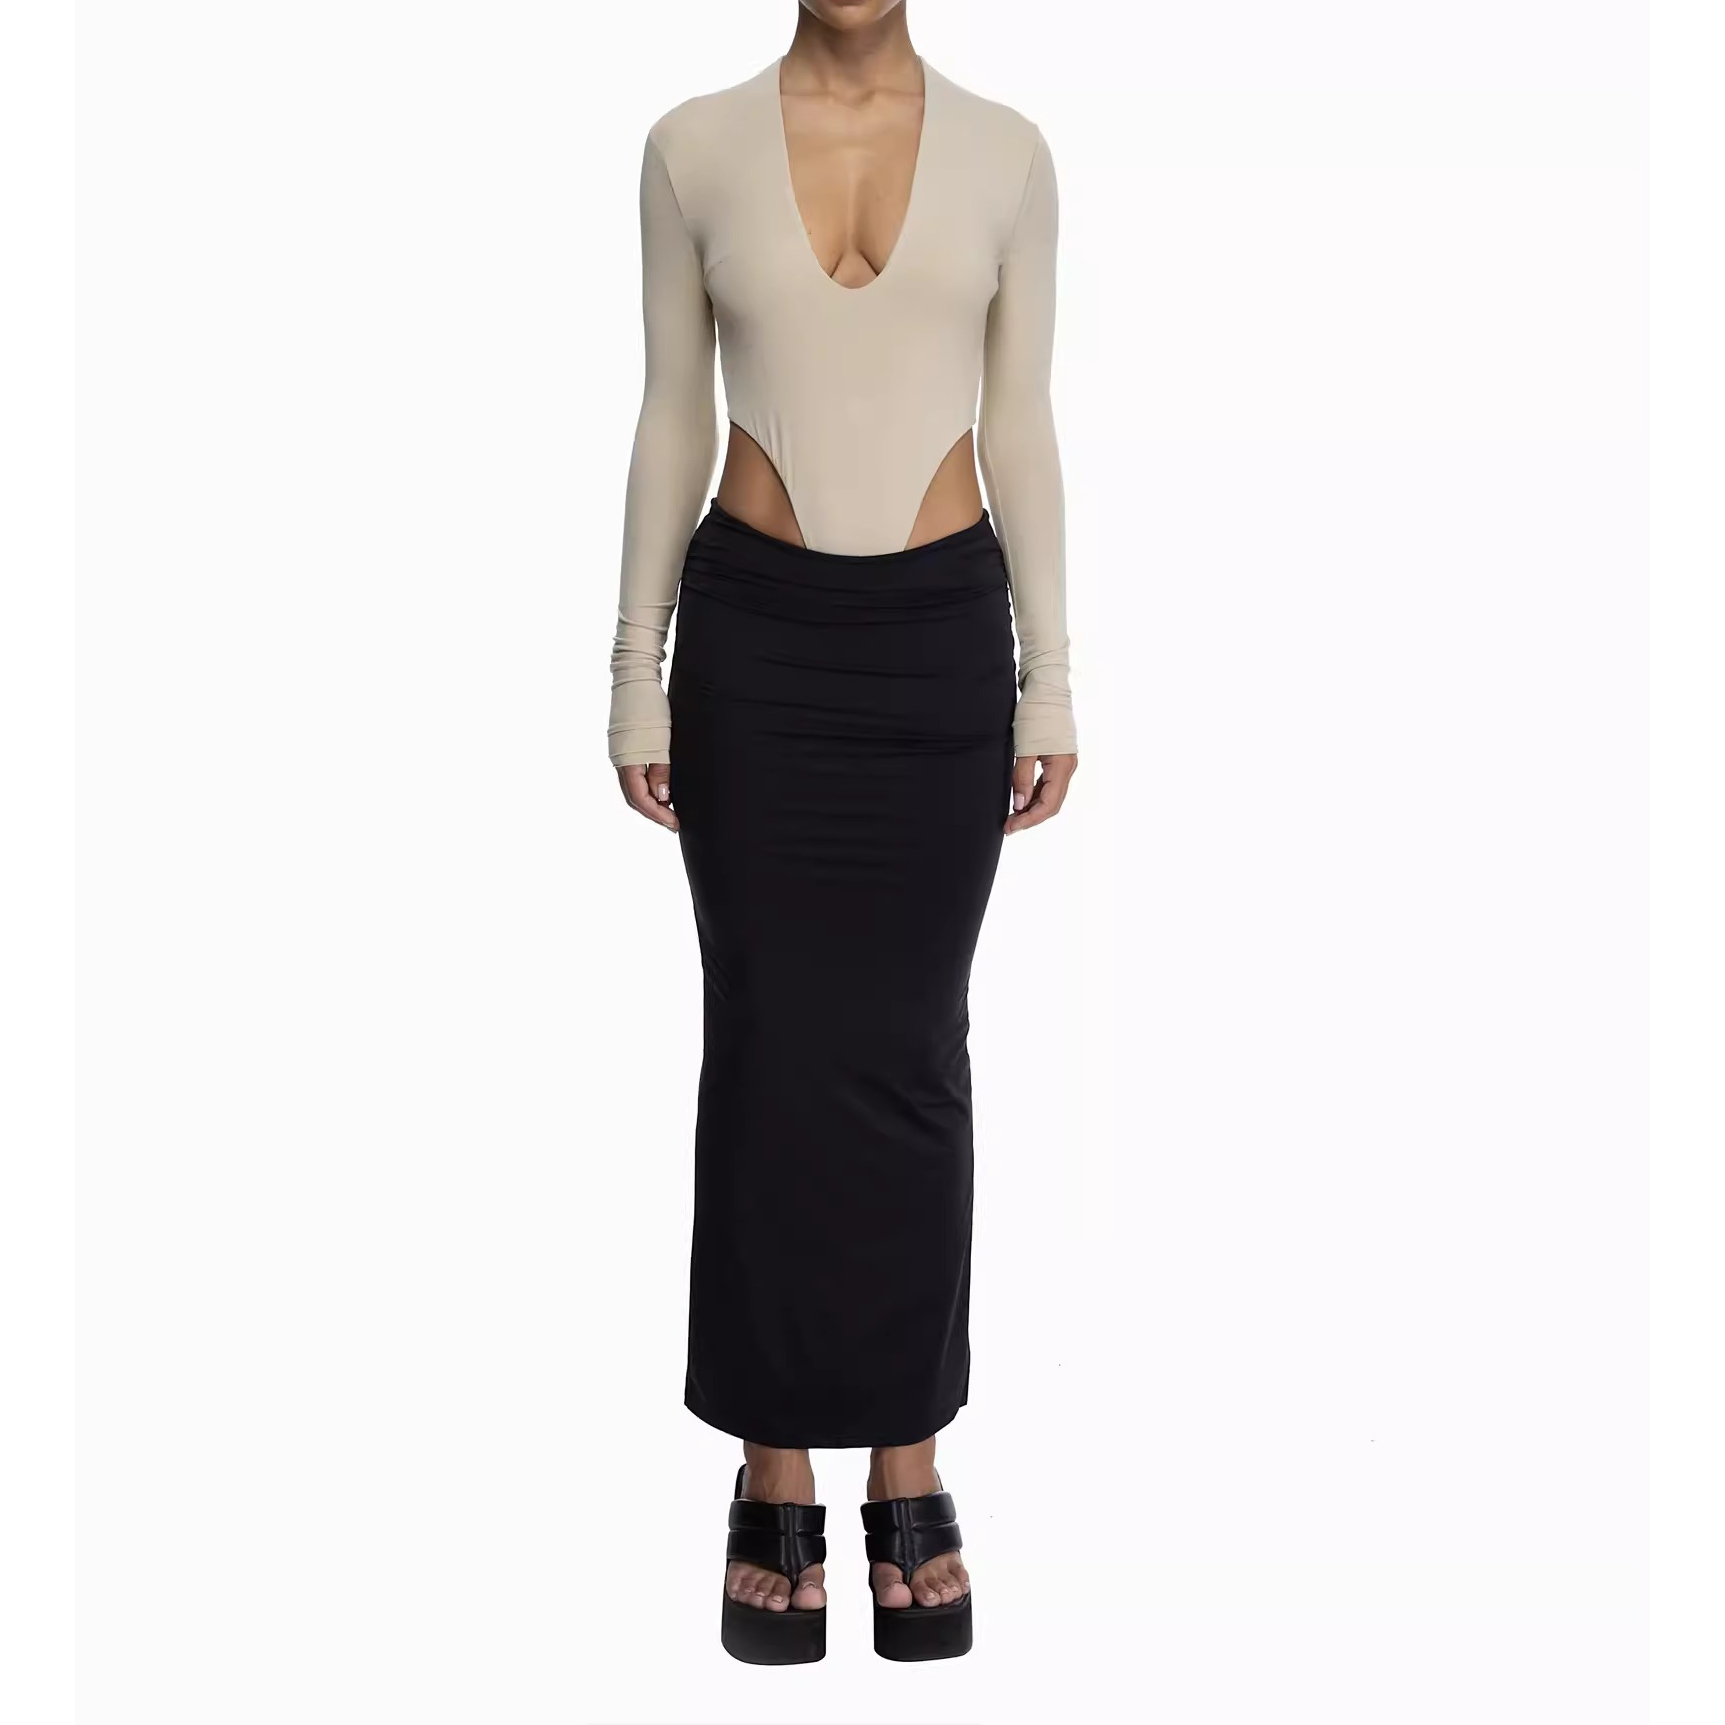 Custom Slit Silk Long Skirt Women Manufacturer